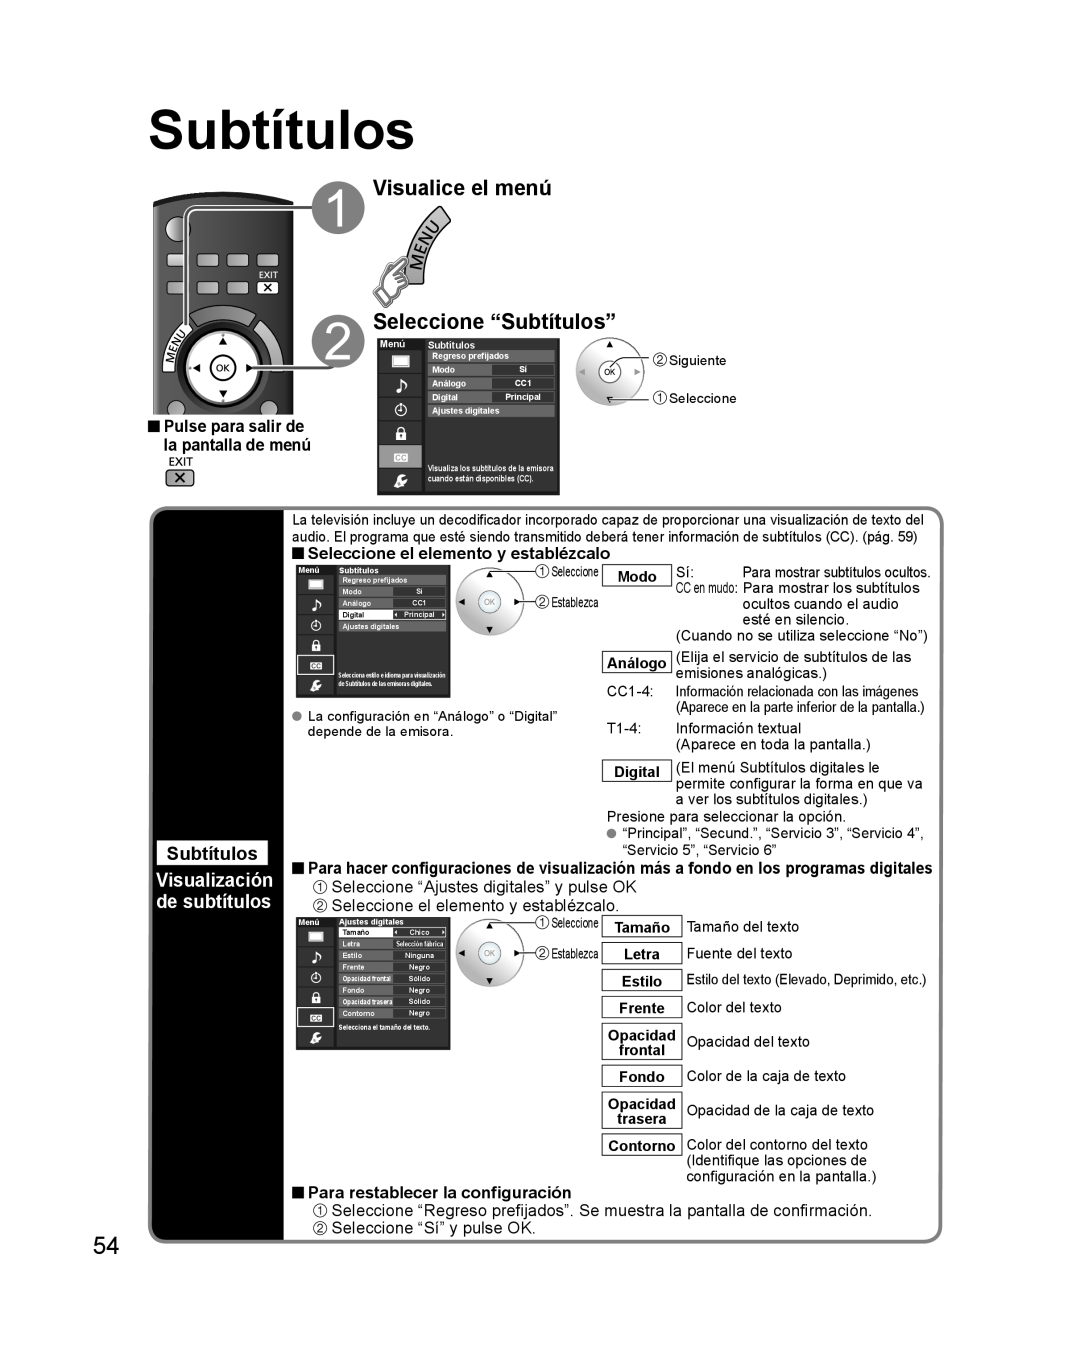 Panasonic TQB2AA0579 Visualice el menú Seleccione “Subtítulos”, Visualización de subtítulos, Modo, Digital, Contorno 